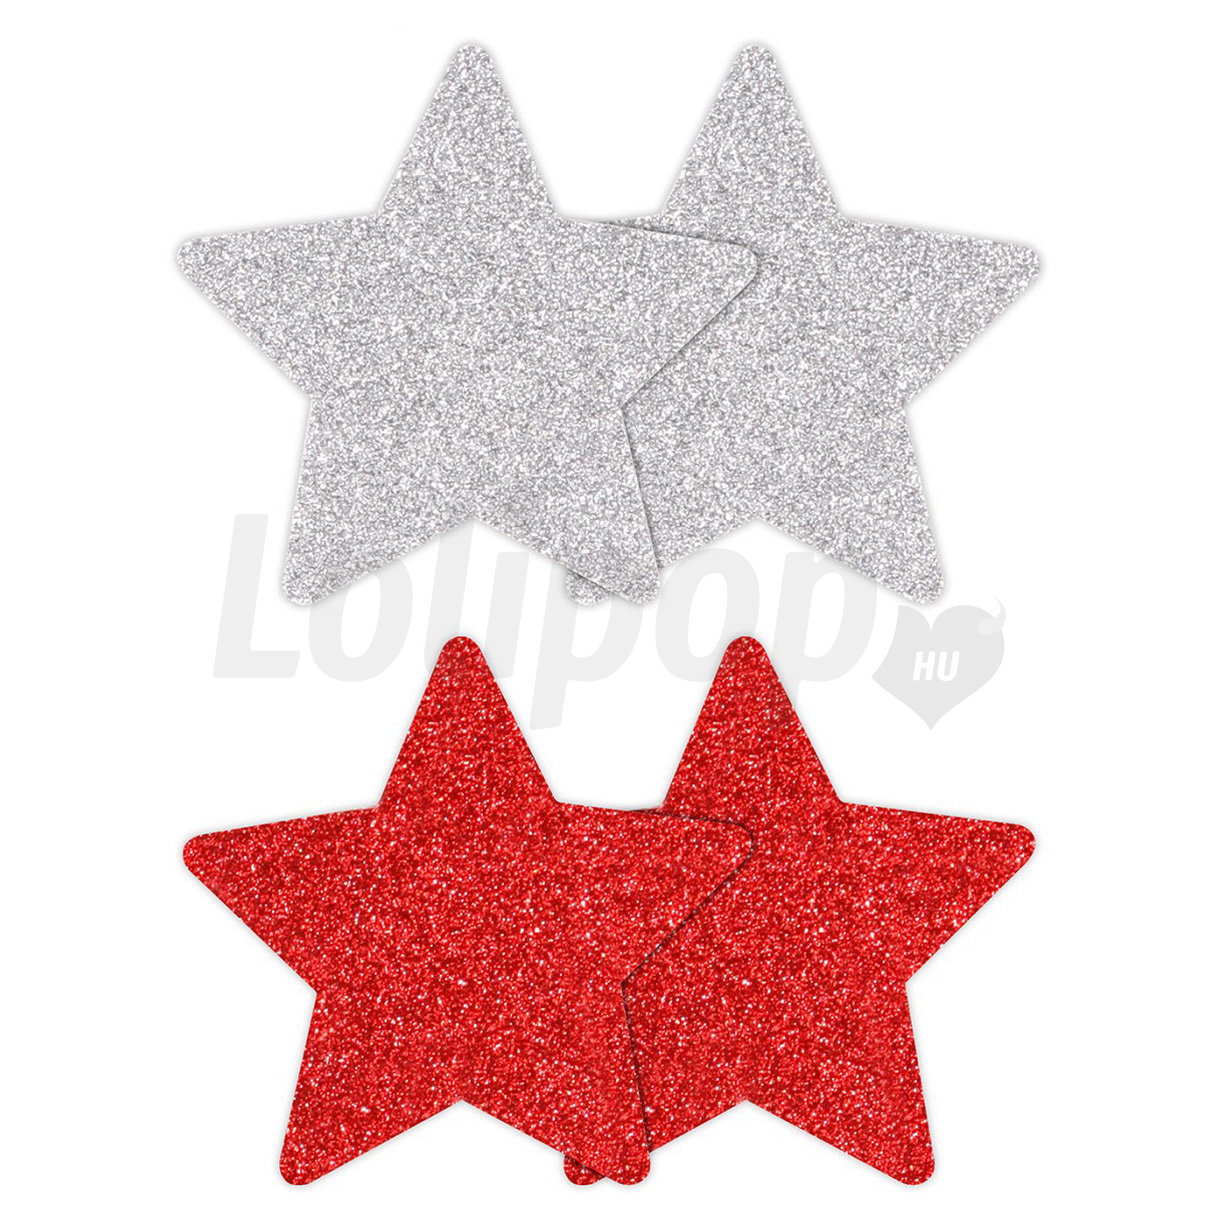 Csillag alakú mellbimbó matrica piros és ezüst 4 db